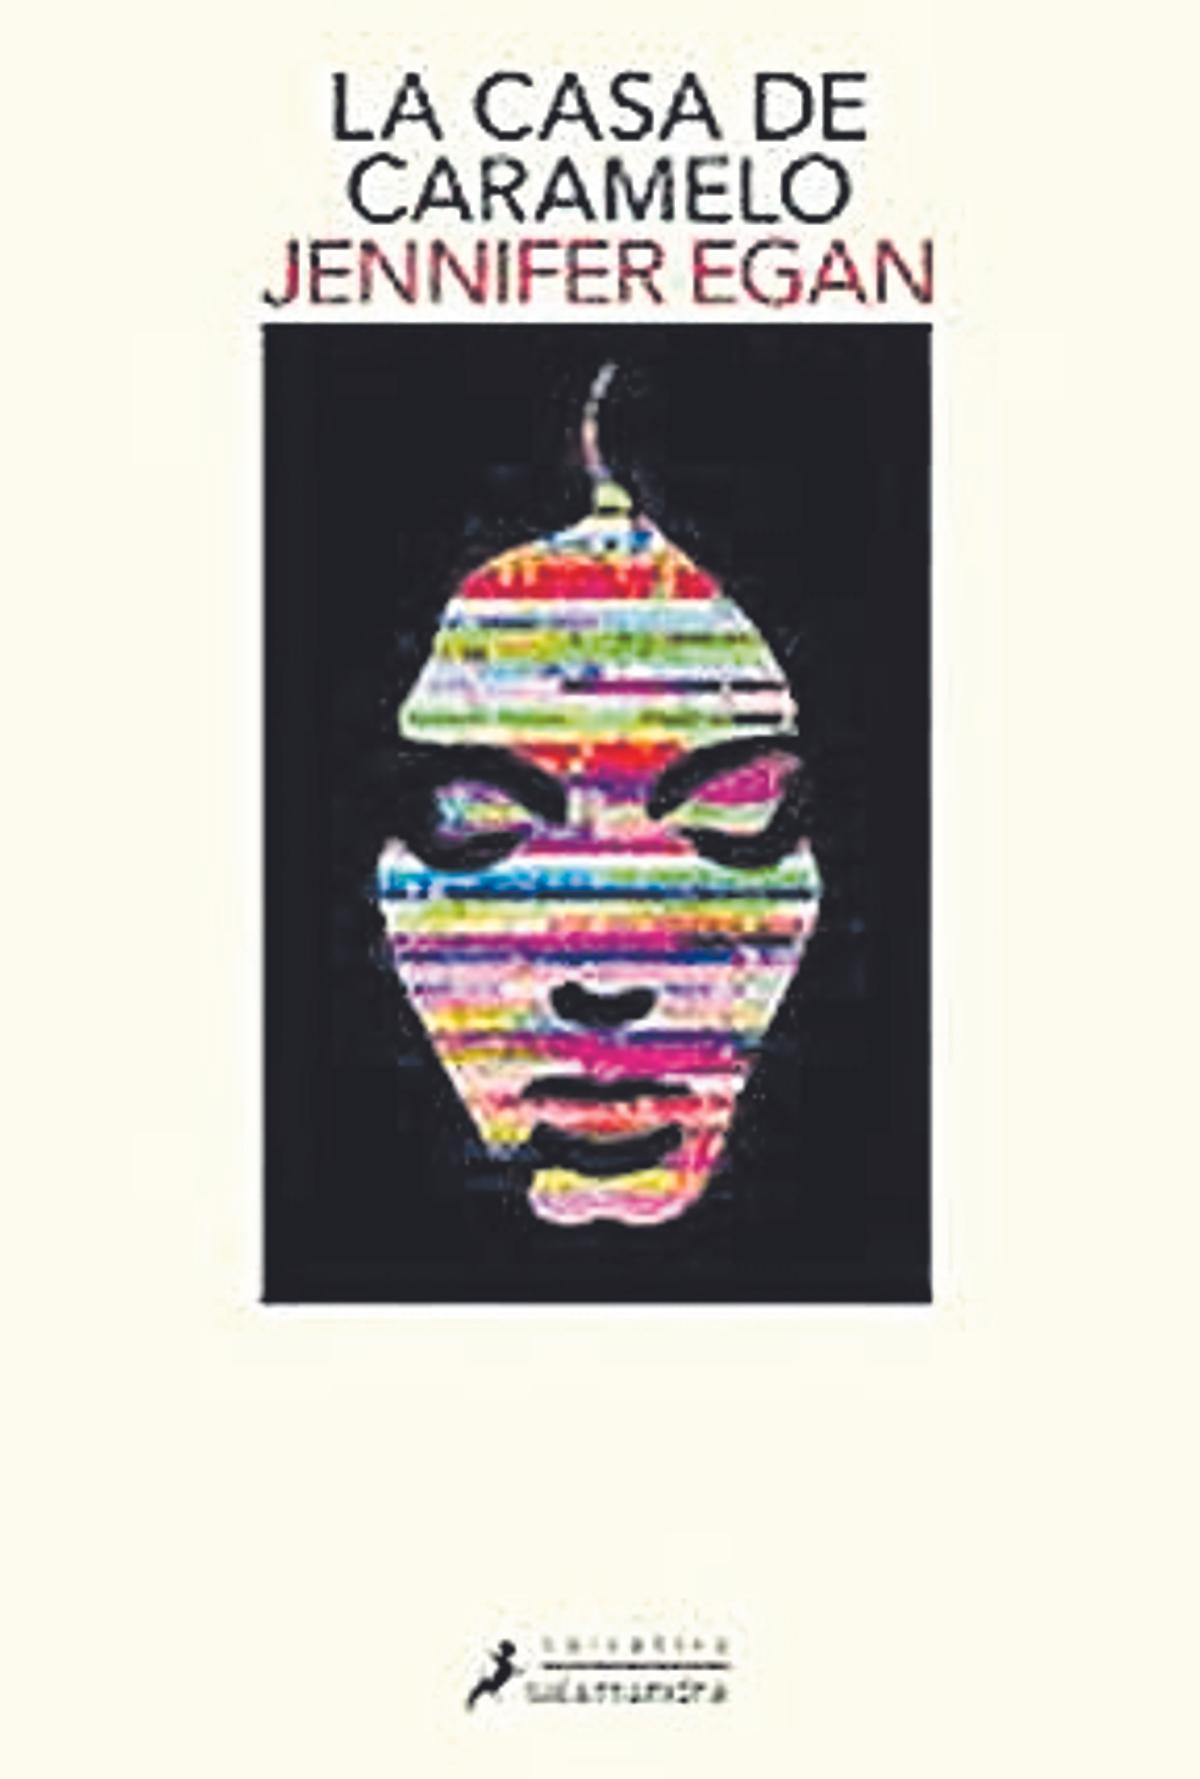 Jennifer Egan  La casa de caramelo   Salamandra  432 páginas / 23 euros